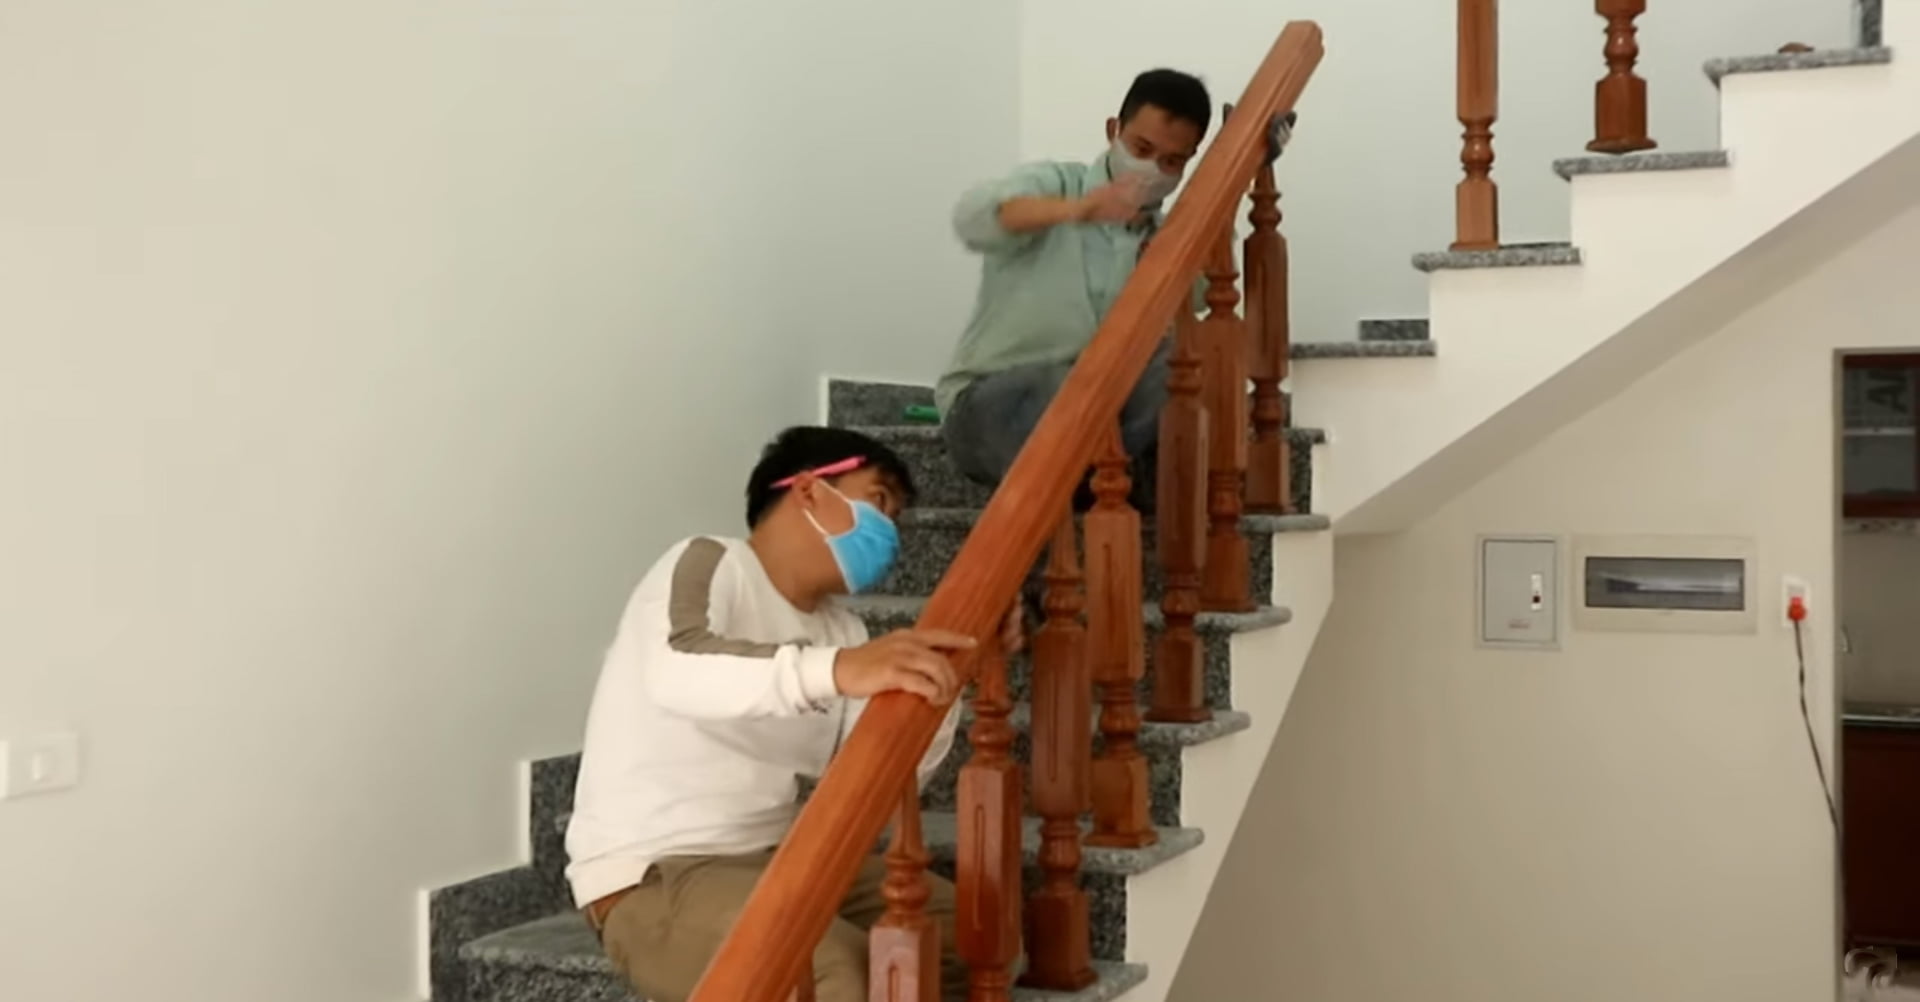 Tìm kiếm thợ sửa chữa cầu thang giá rẻ tại Hà Nội? Hãy gọi ngay đến đội ngũ của chúng tôi. Chúng tôi cam kết mang đến sự hài lòng và chất lượng tốt nhất cho bạn.